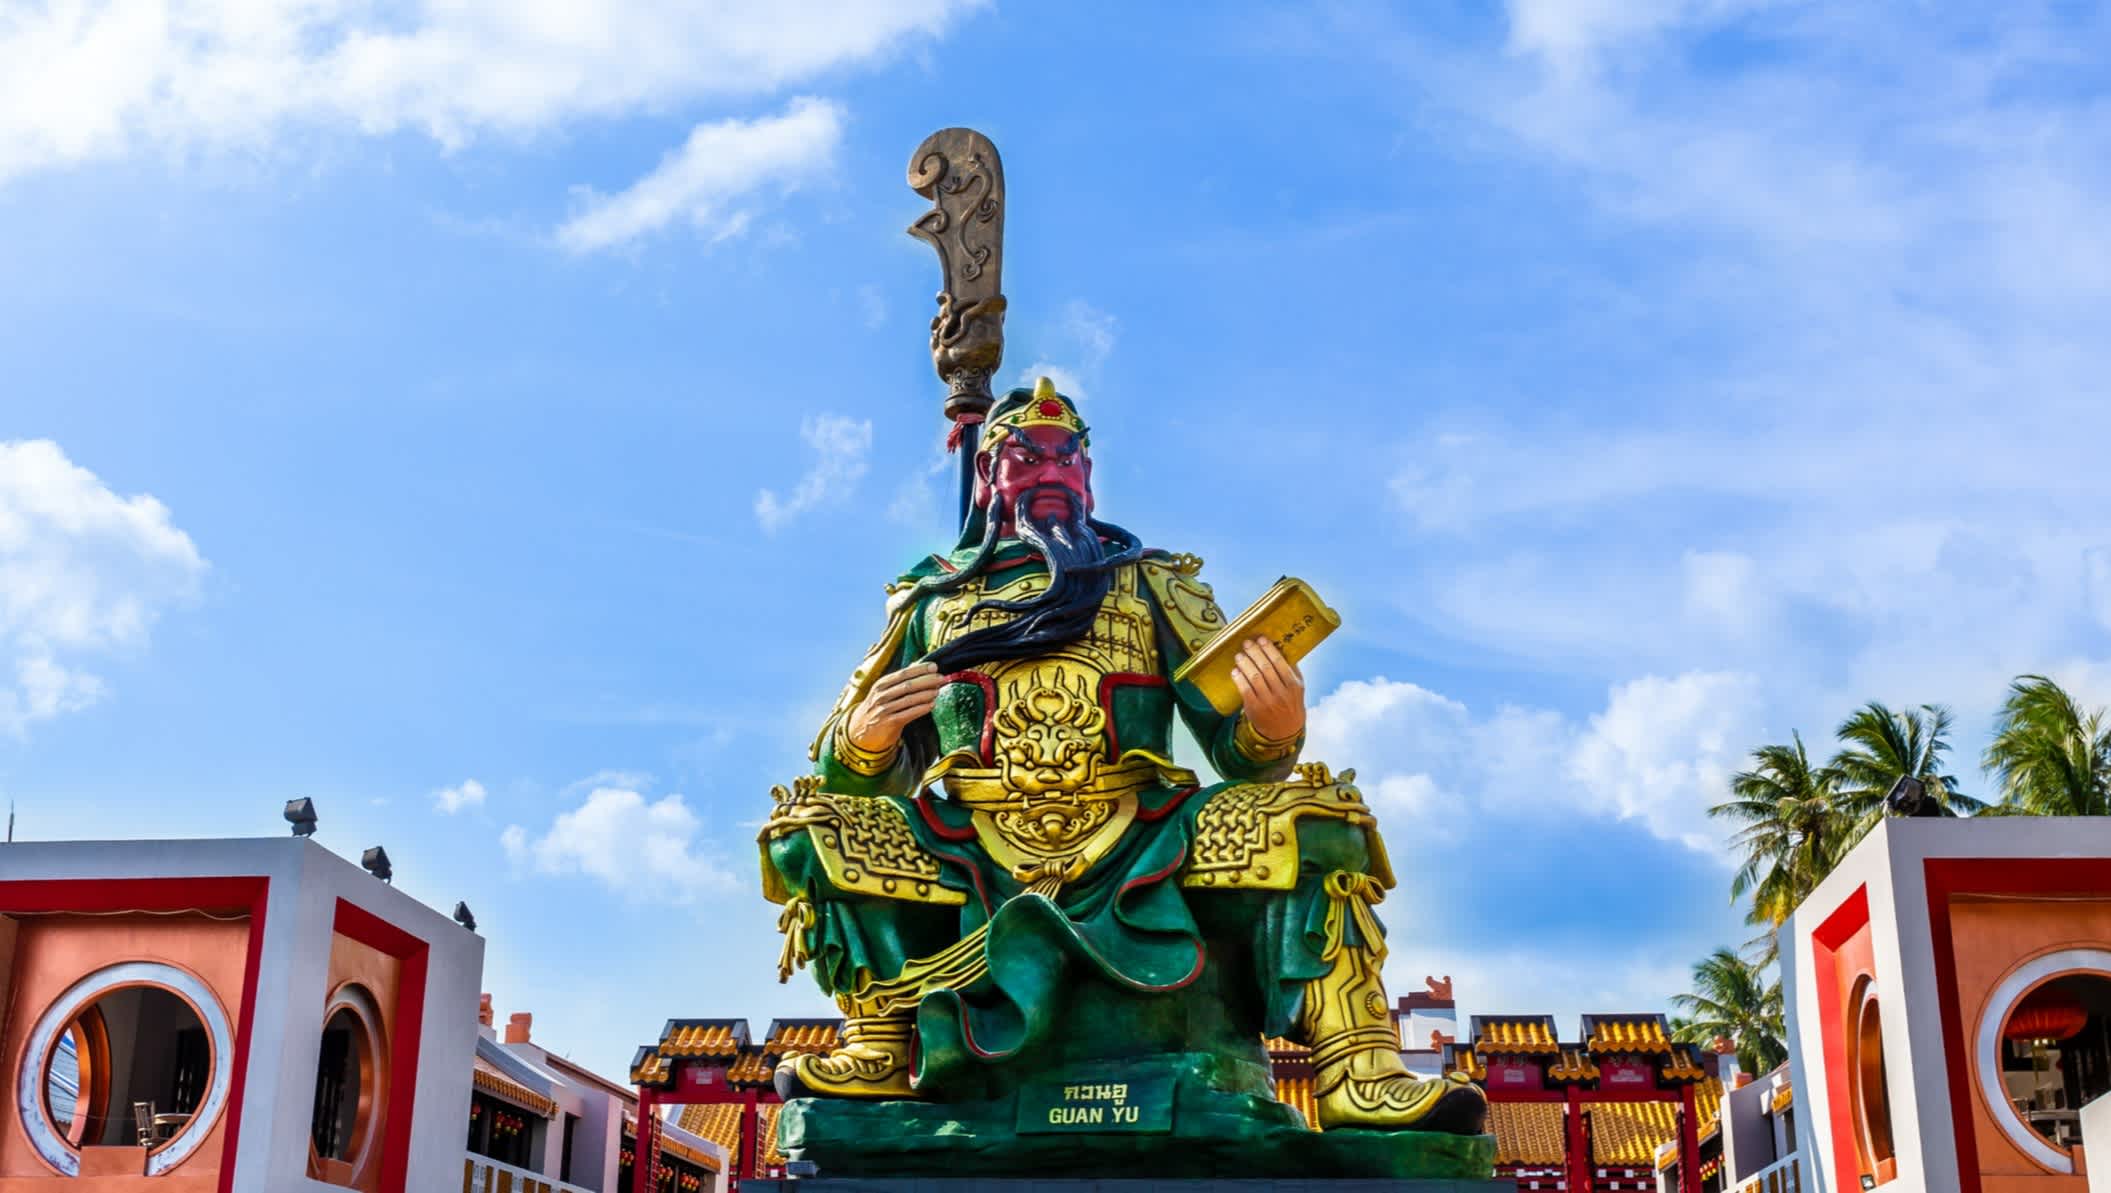 Statue de Guan Yu au complexe de temples Guan-Yu Koh Samui Shrine sur Koh Samui, Surat Thani, Thaïlande

